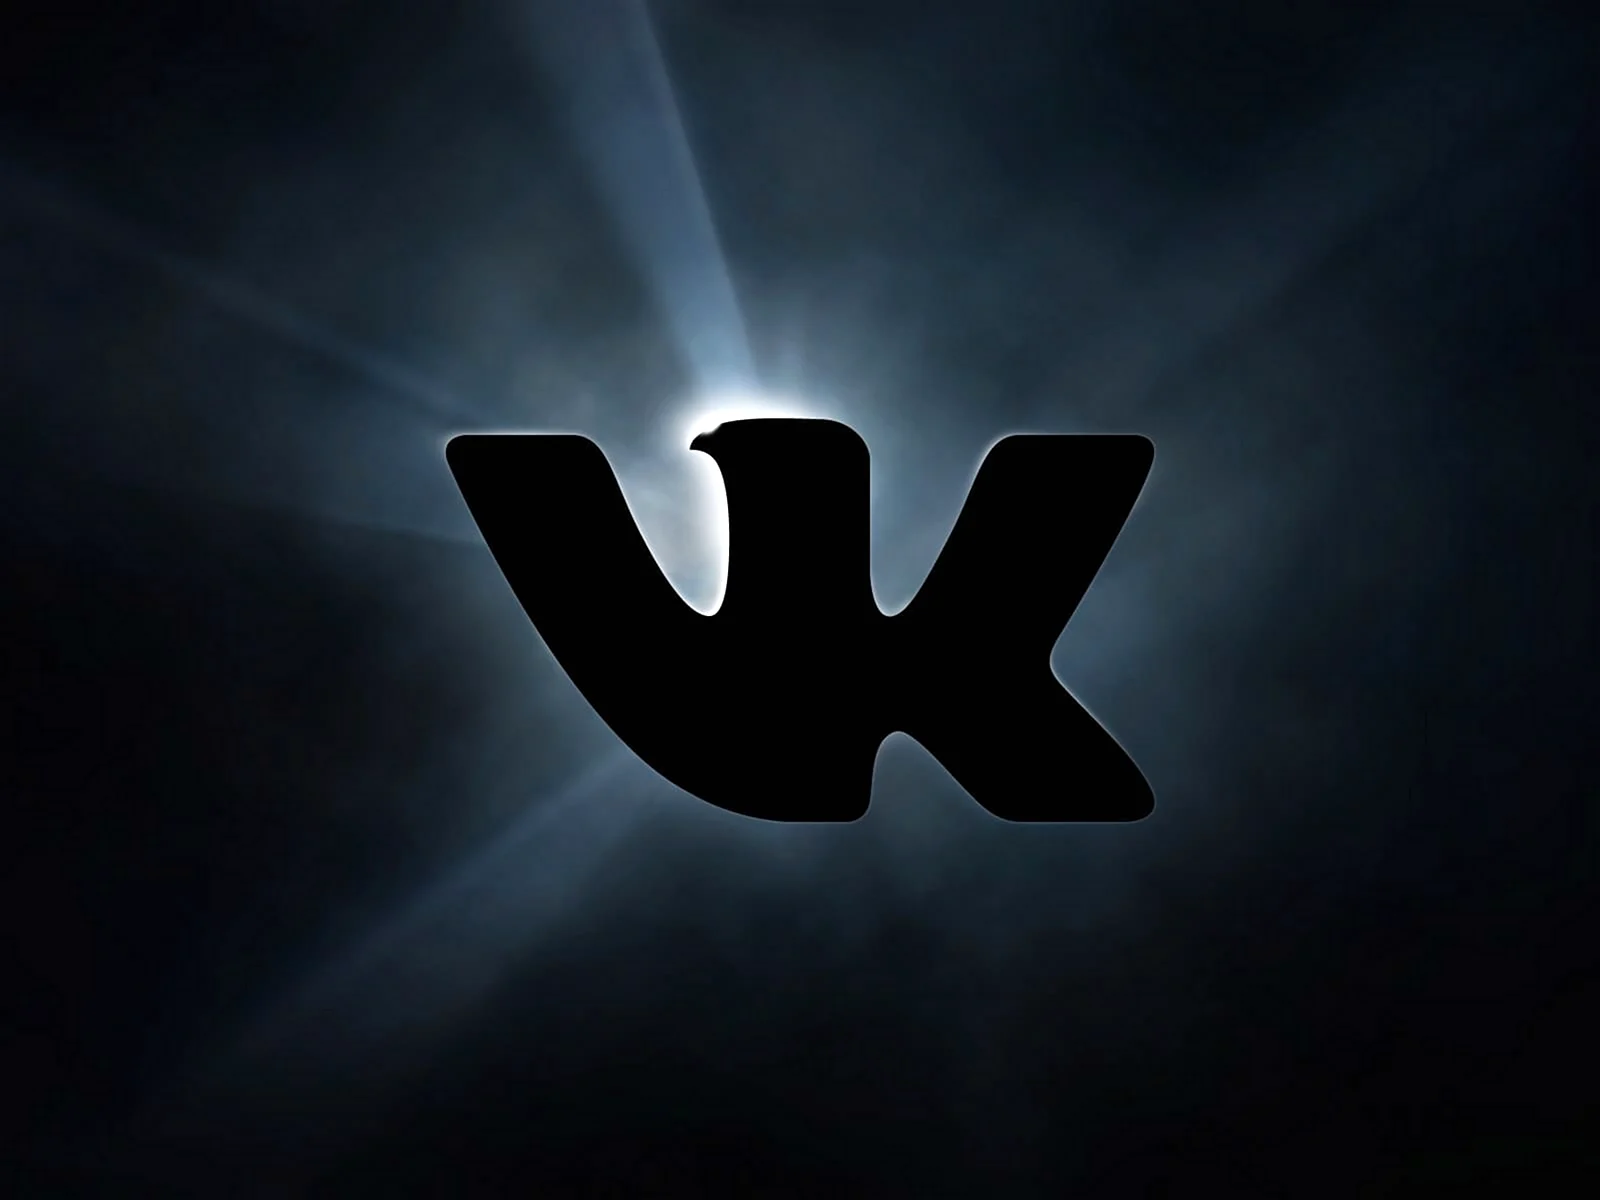 ВК лого